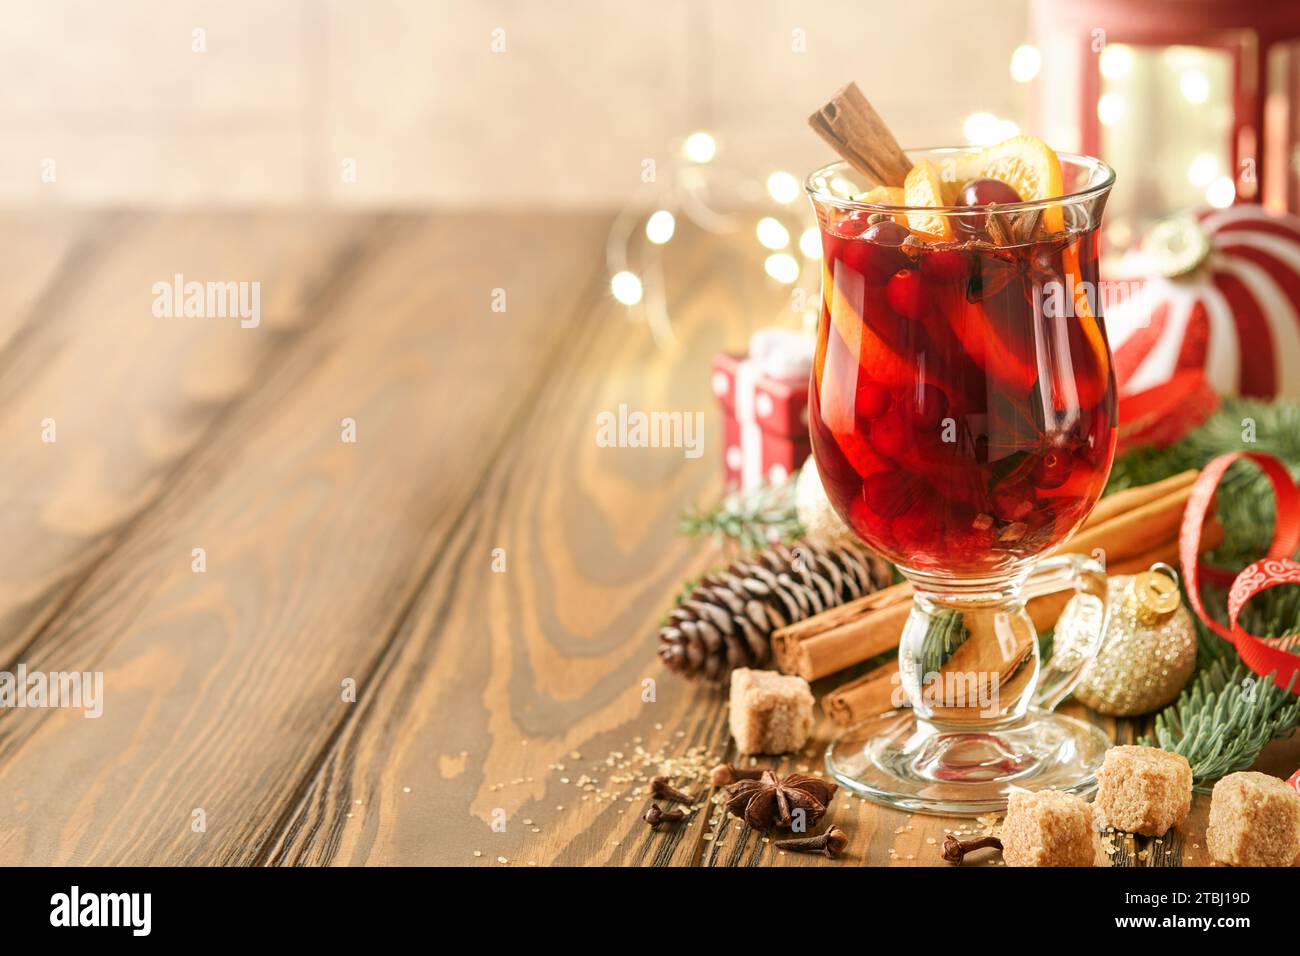 Noël boit du vin chaud chaud. Verre de vin chaud aux épices aromatiques cannelle, anis, sucre et branches de sapin avec bokeh et décorations. T Banque D'Images